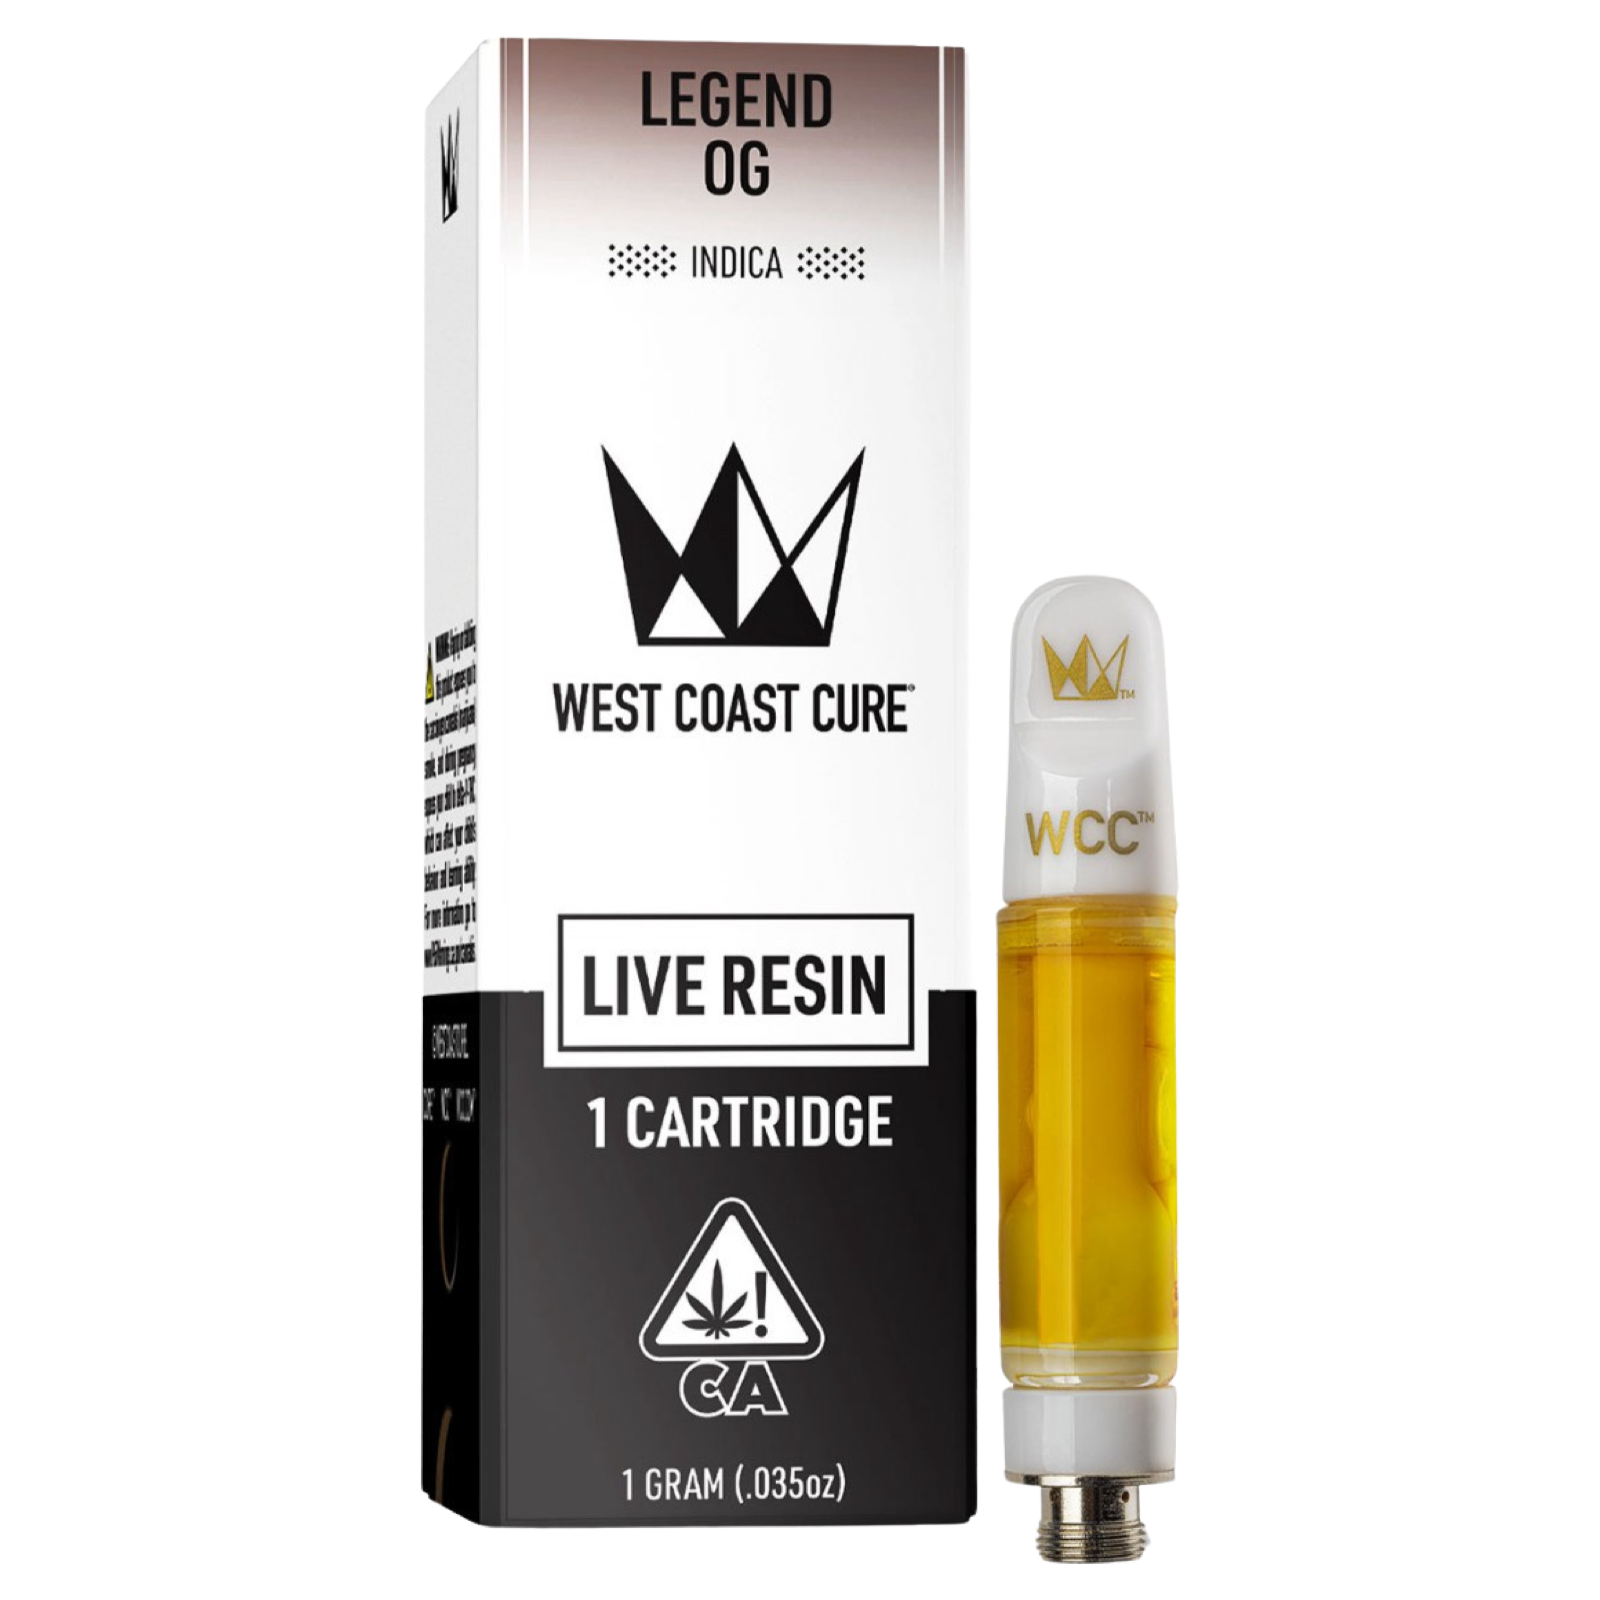 Legend OG | West Coast Cure Live Resin Cartridge | 1G | Indica